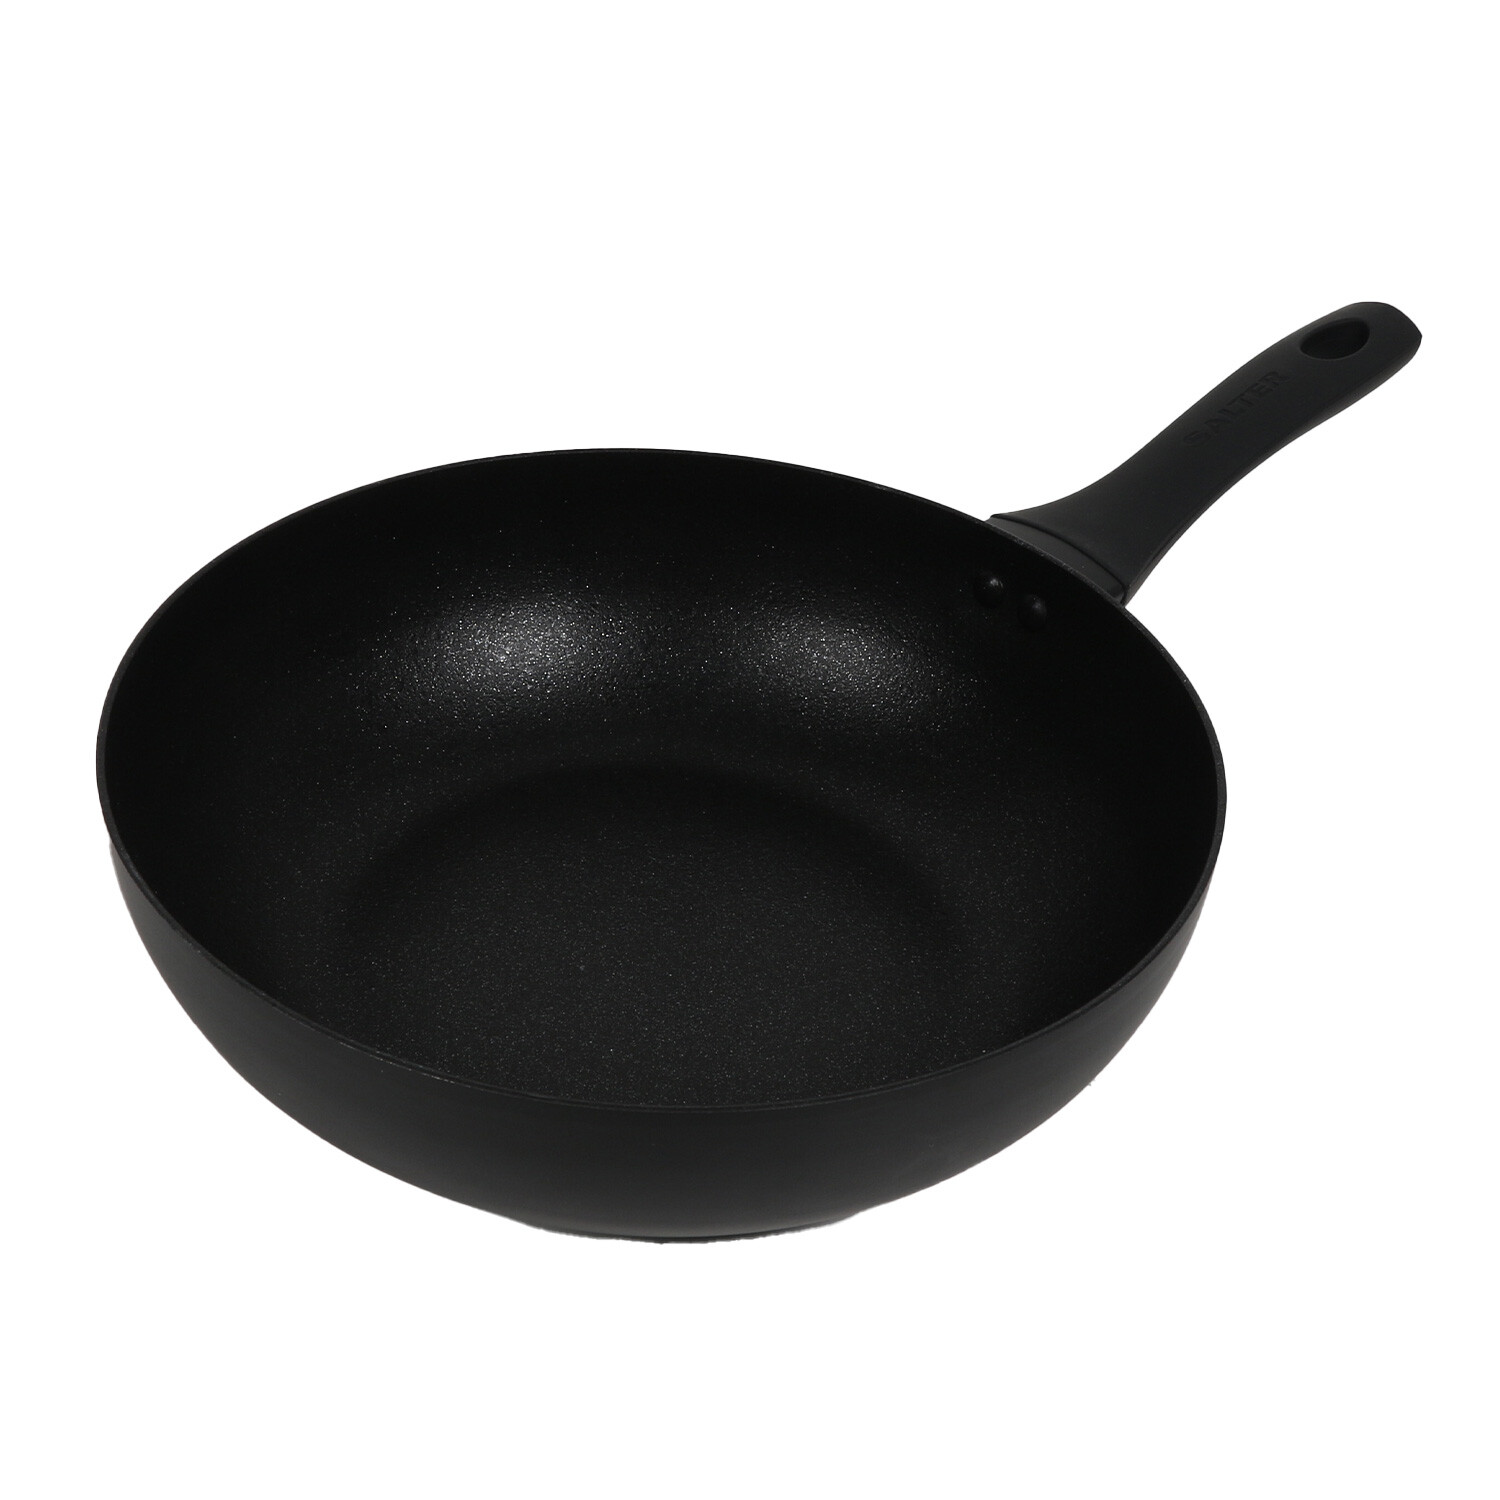 Salter Premium Stir Fry Pan - Black Image 2